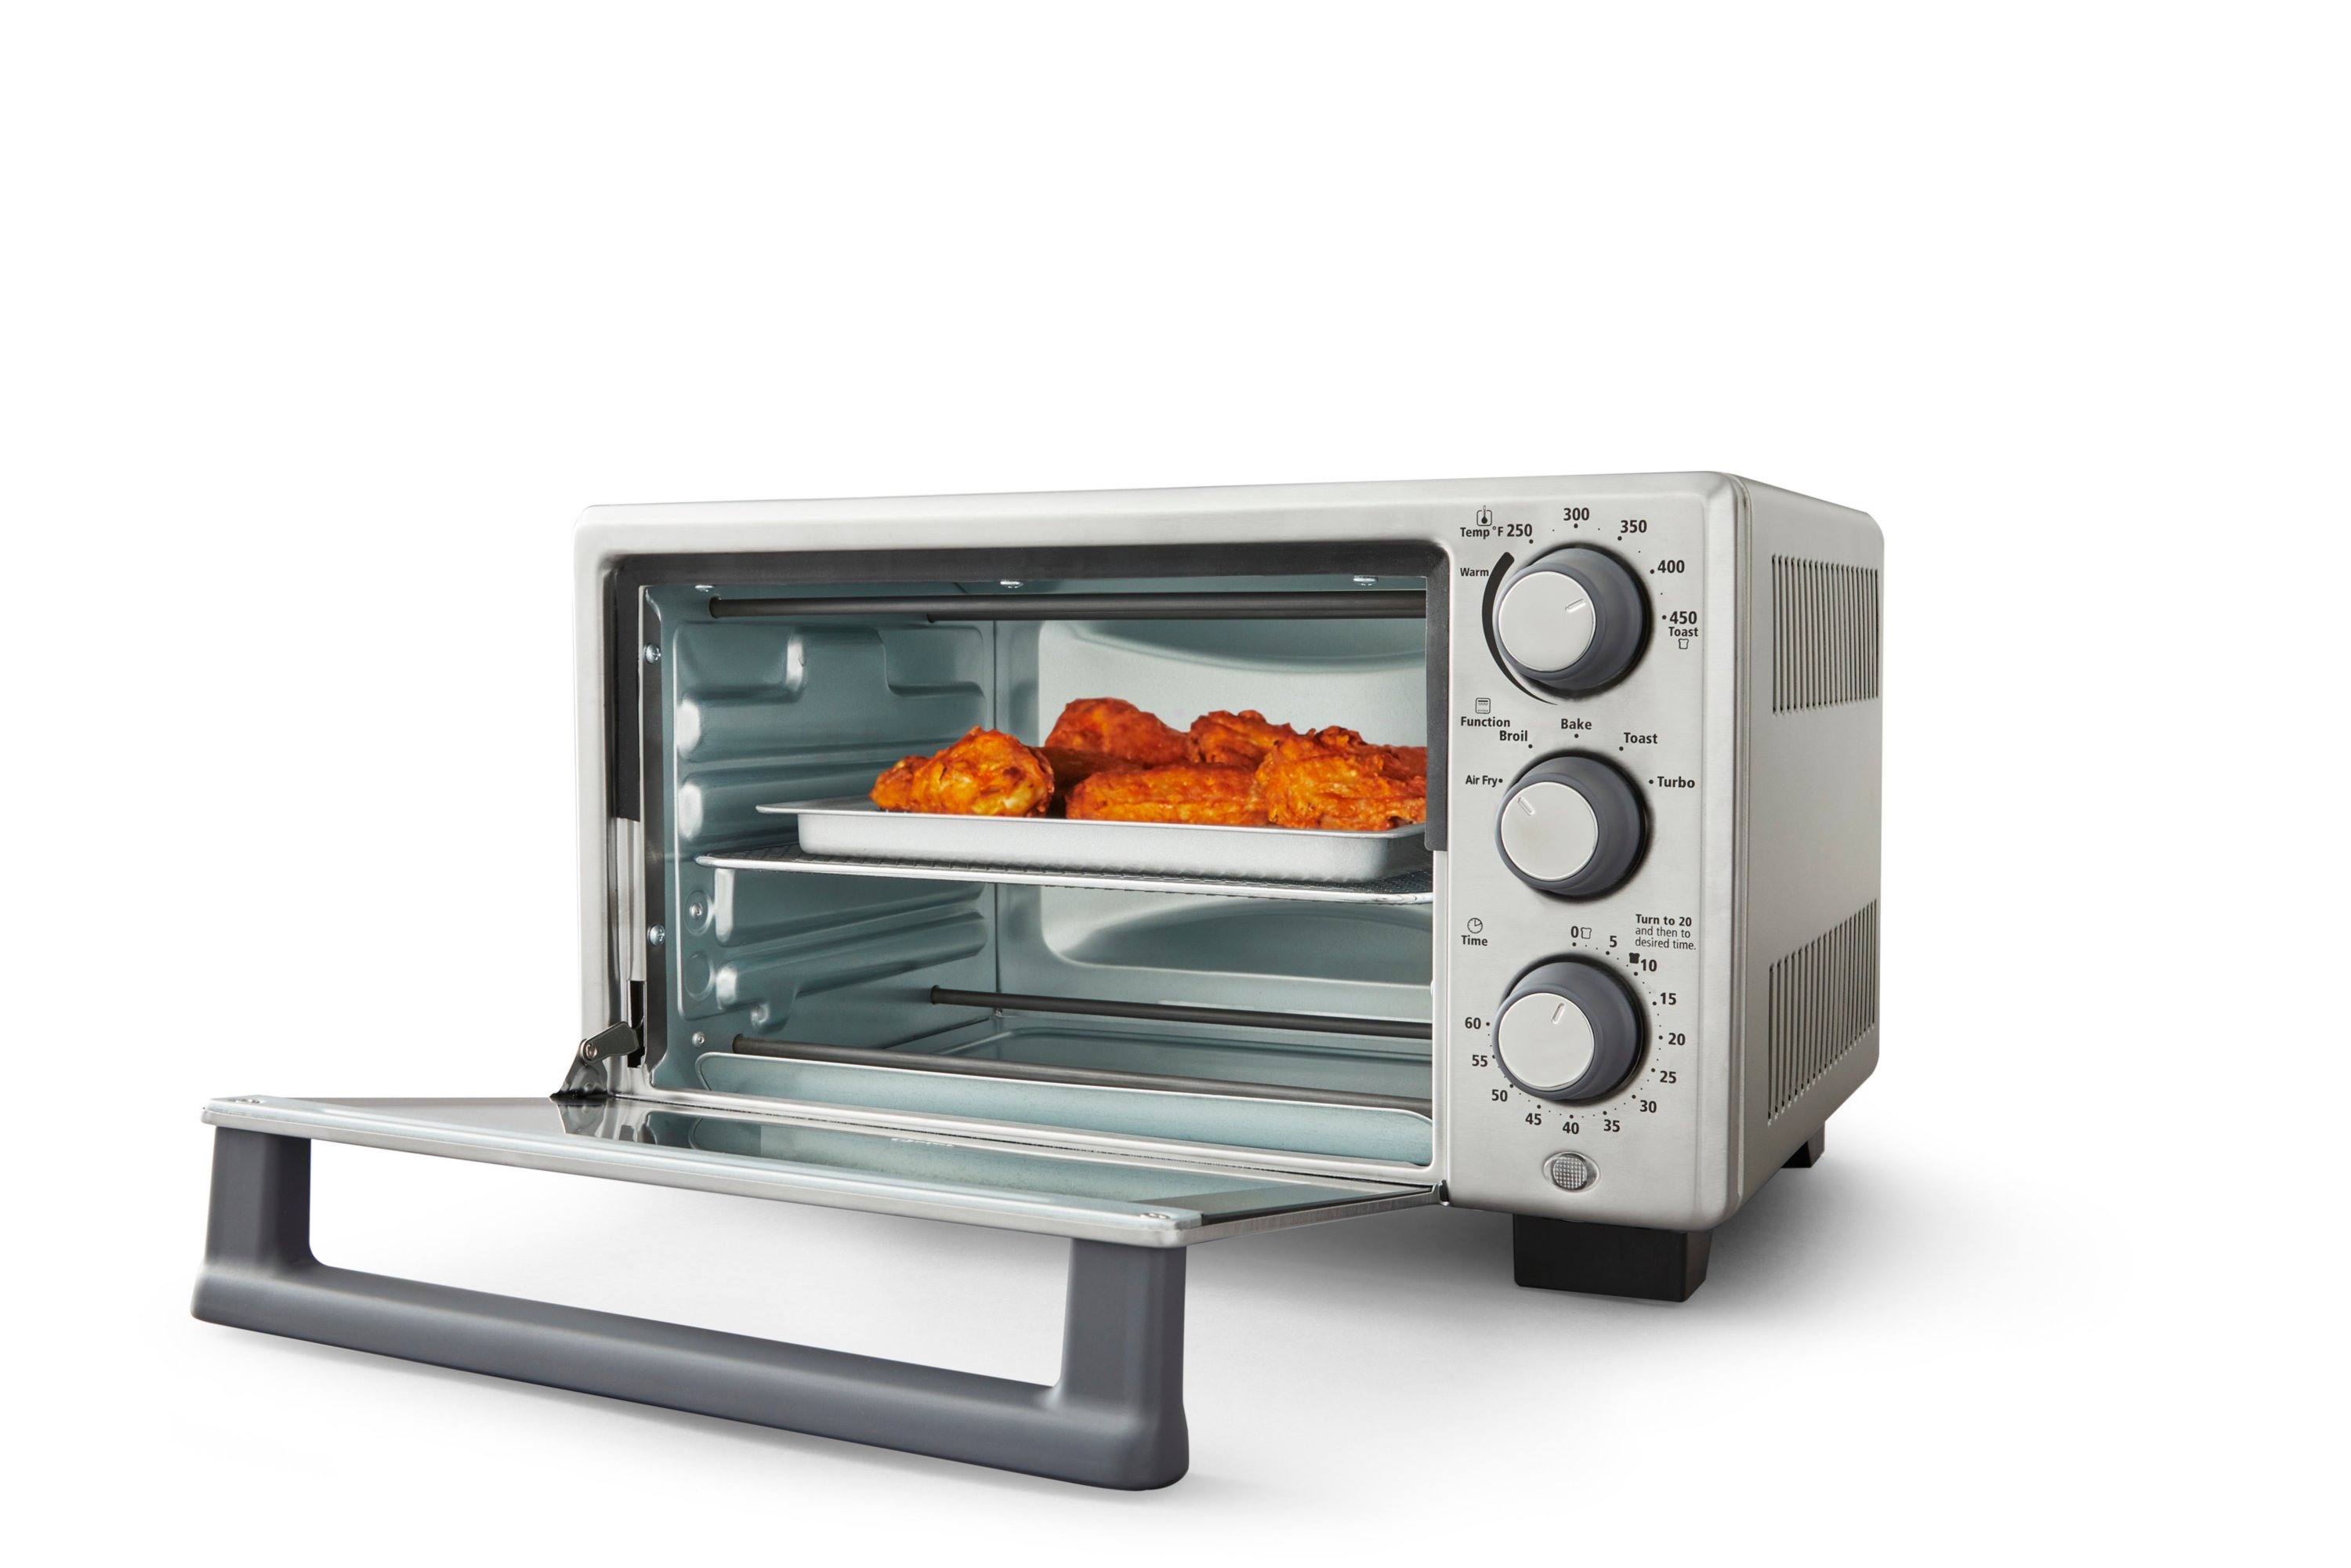 Best Buy: Oster Air Fryer Toaster Oven Black TSSTTVMAF1